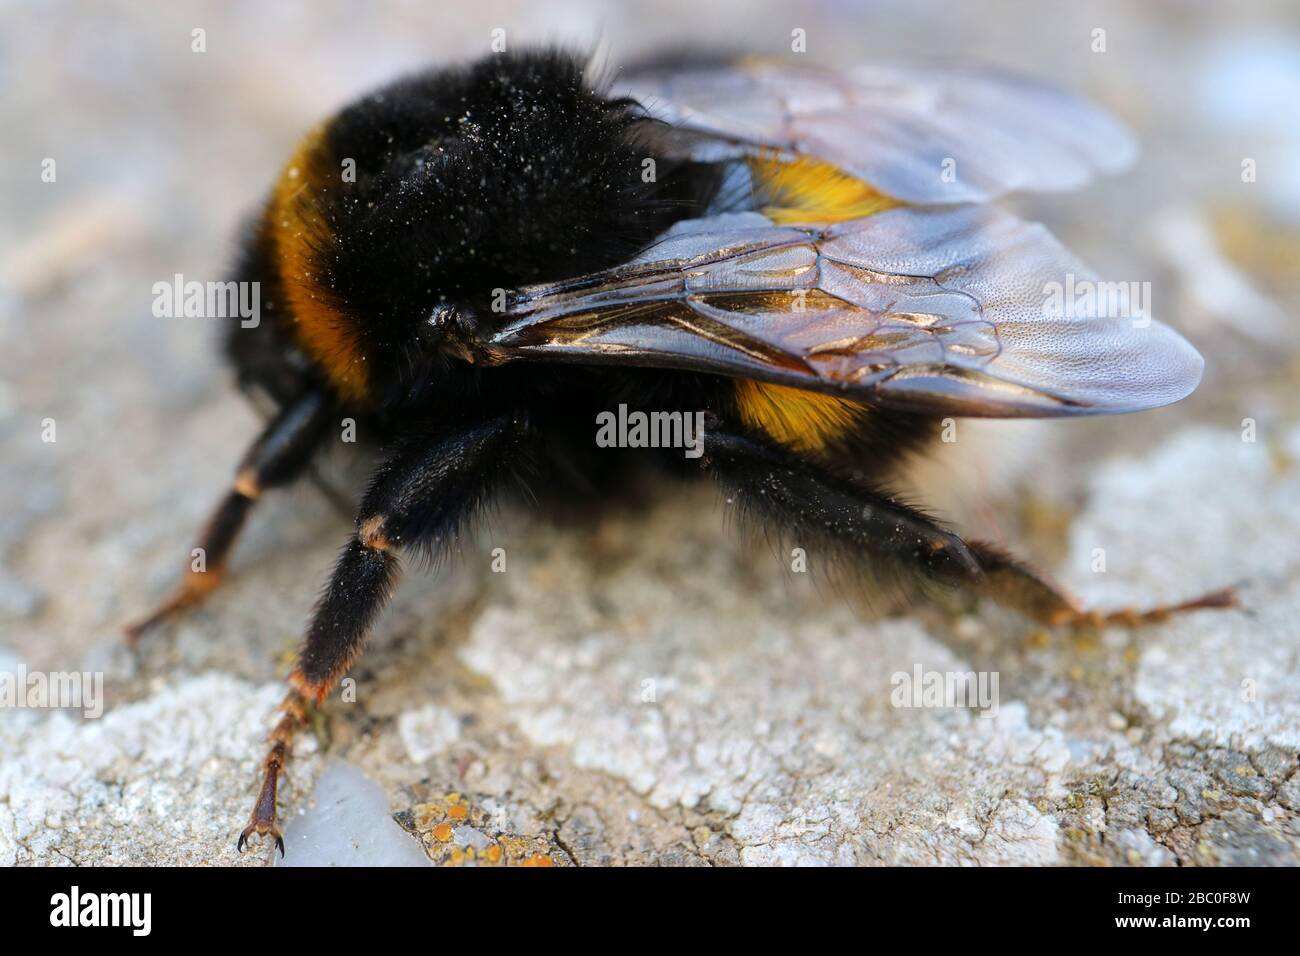 Nero-giallo bumblebee con le ali trasparenti sul percorso in giardino, bug, bumblebee, insetti, animali, macro, foto di fauna, fotografia di scorta Foto Stock